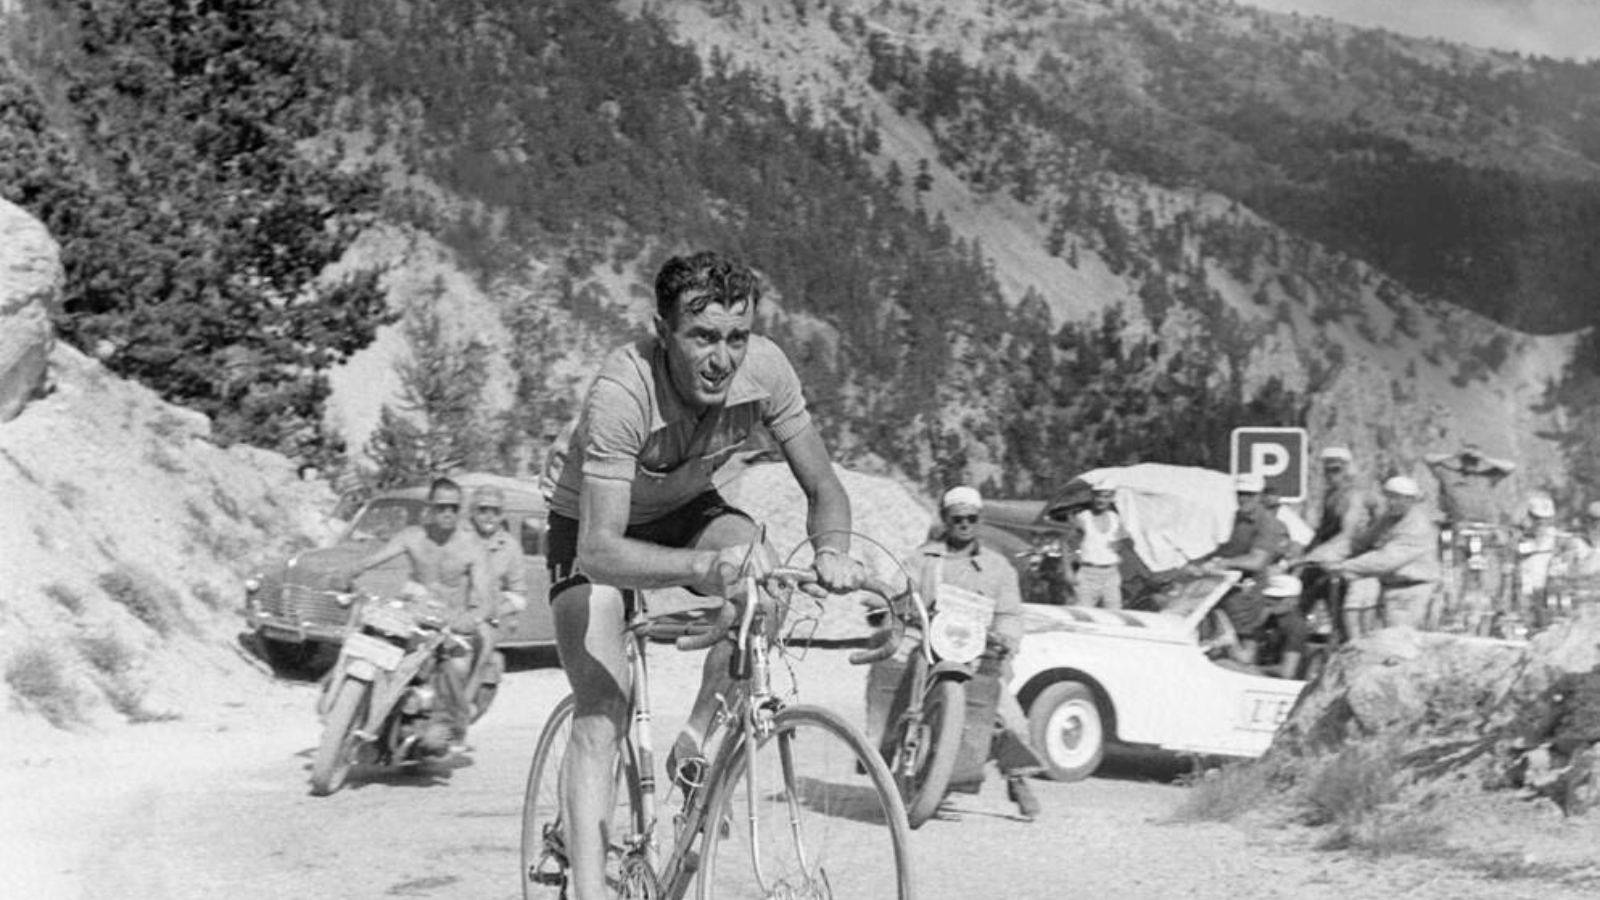 Louison Bobet riding solo on the Mont Ventoux at the Tour de France 1953